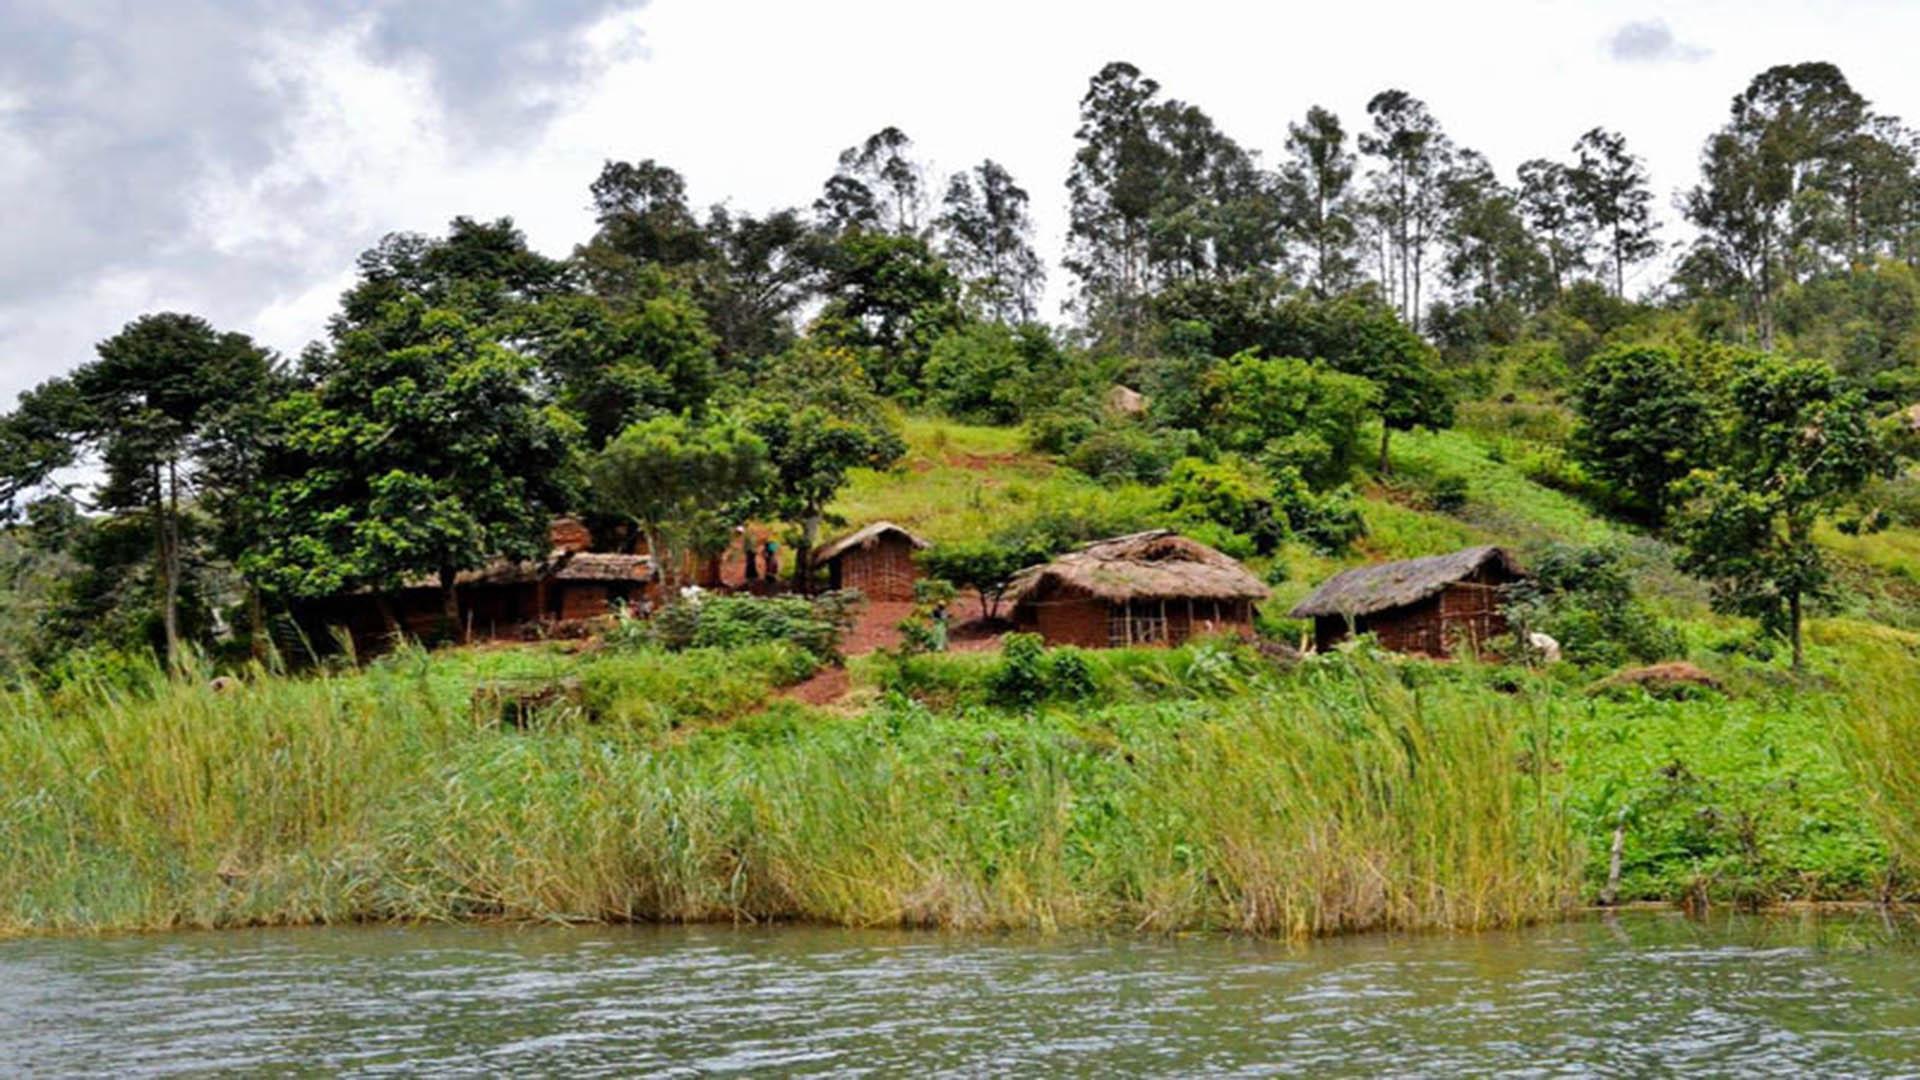 Island in the Democratic Republic of the Congo